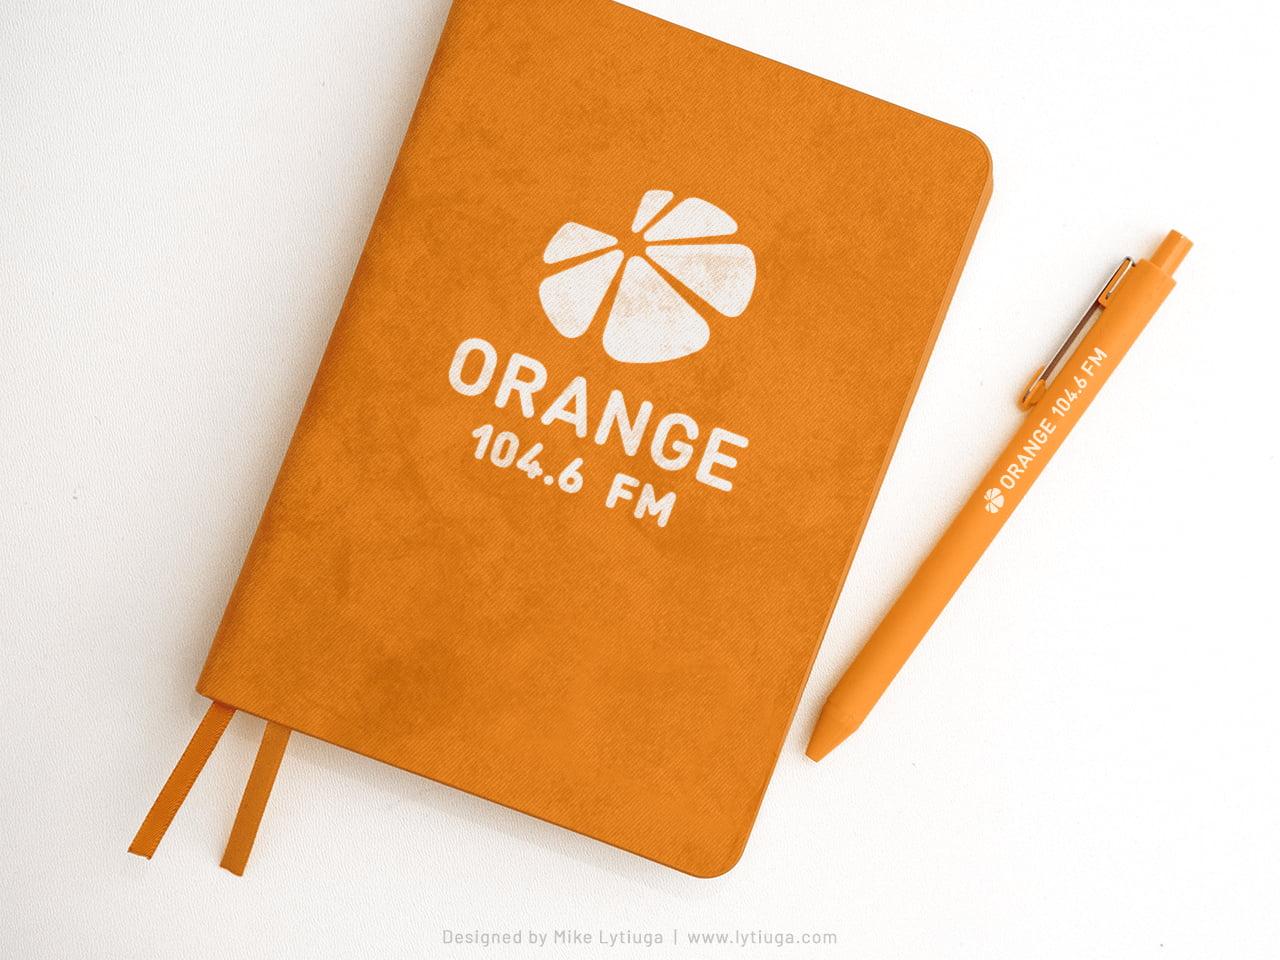 logo design & branding for Orange FM radio station | vertical logo option